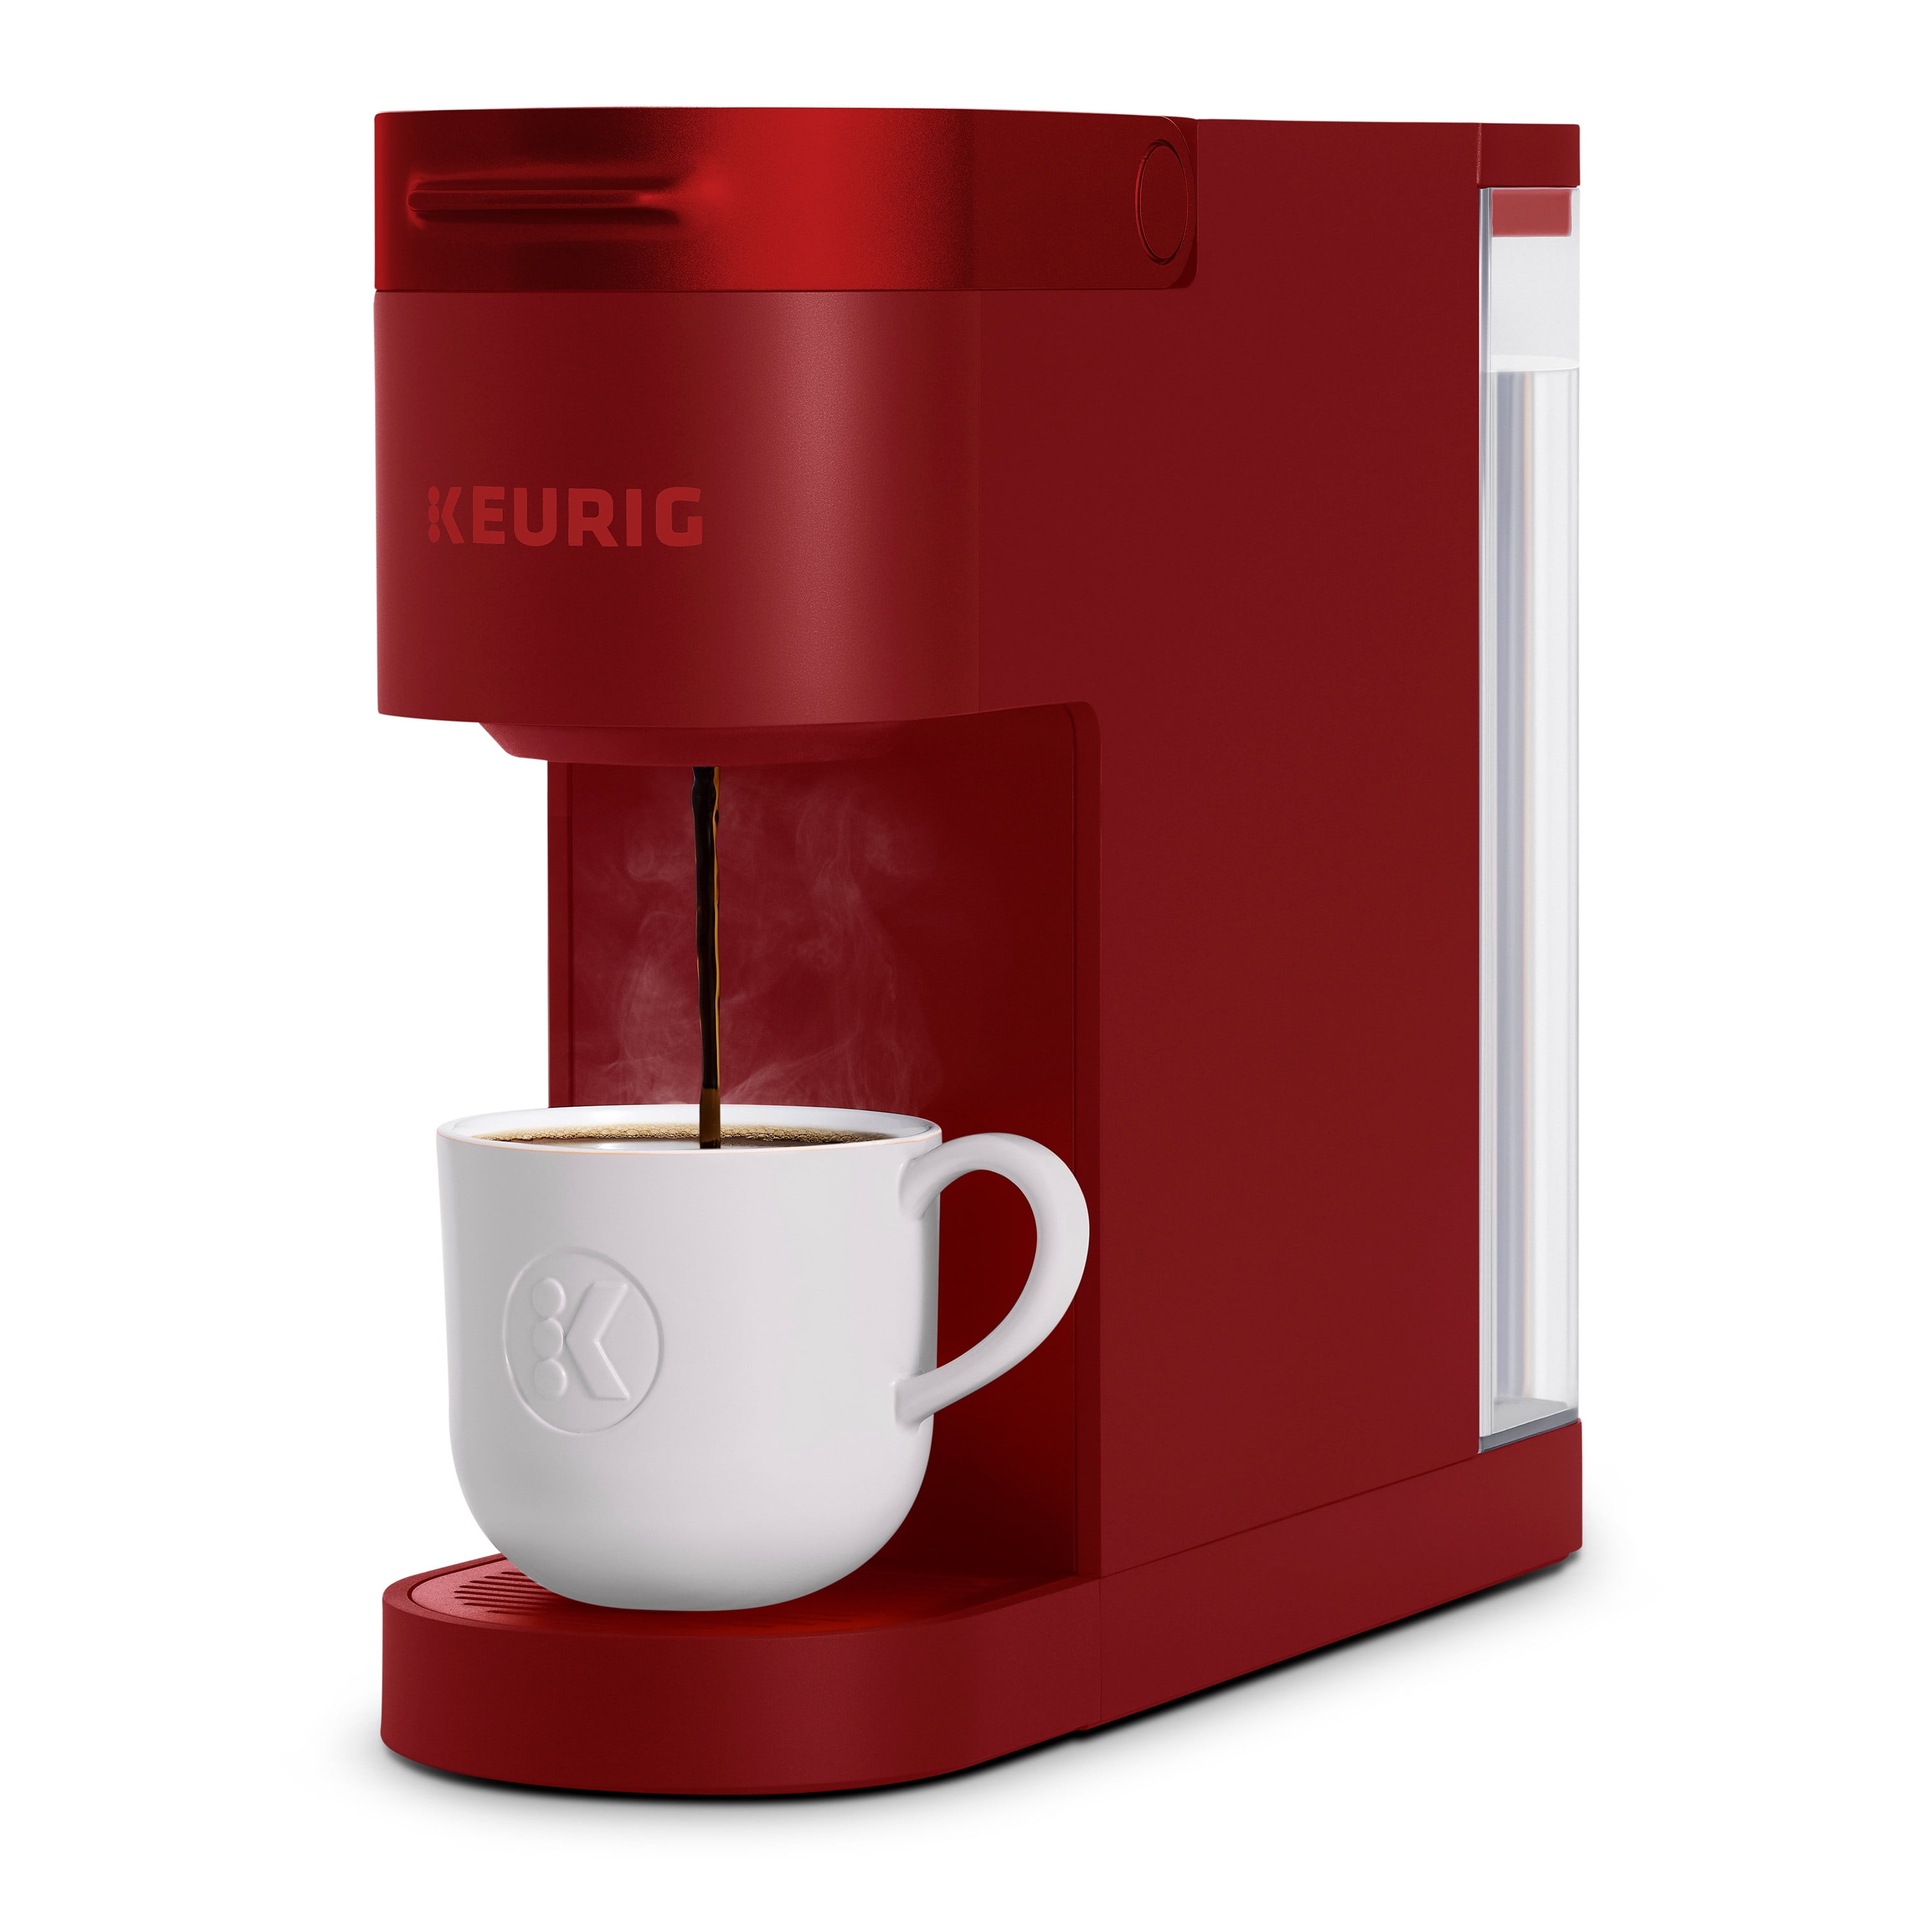 Coffee Maker Review: Keurig K-Duo vs. Keurig K-Duo Plus - Forbes